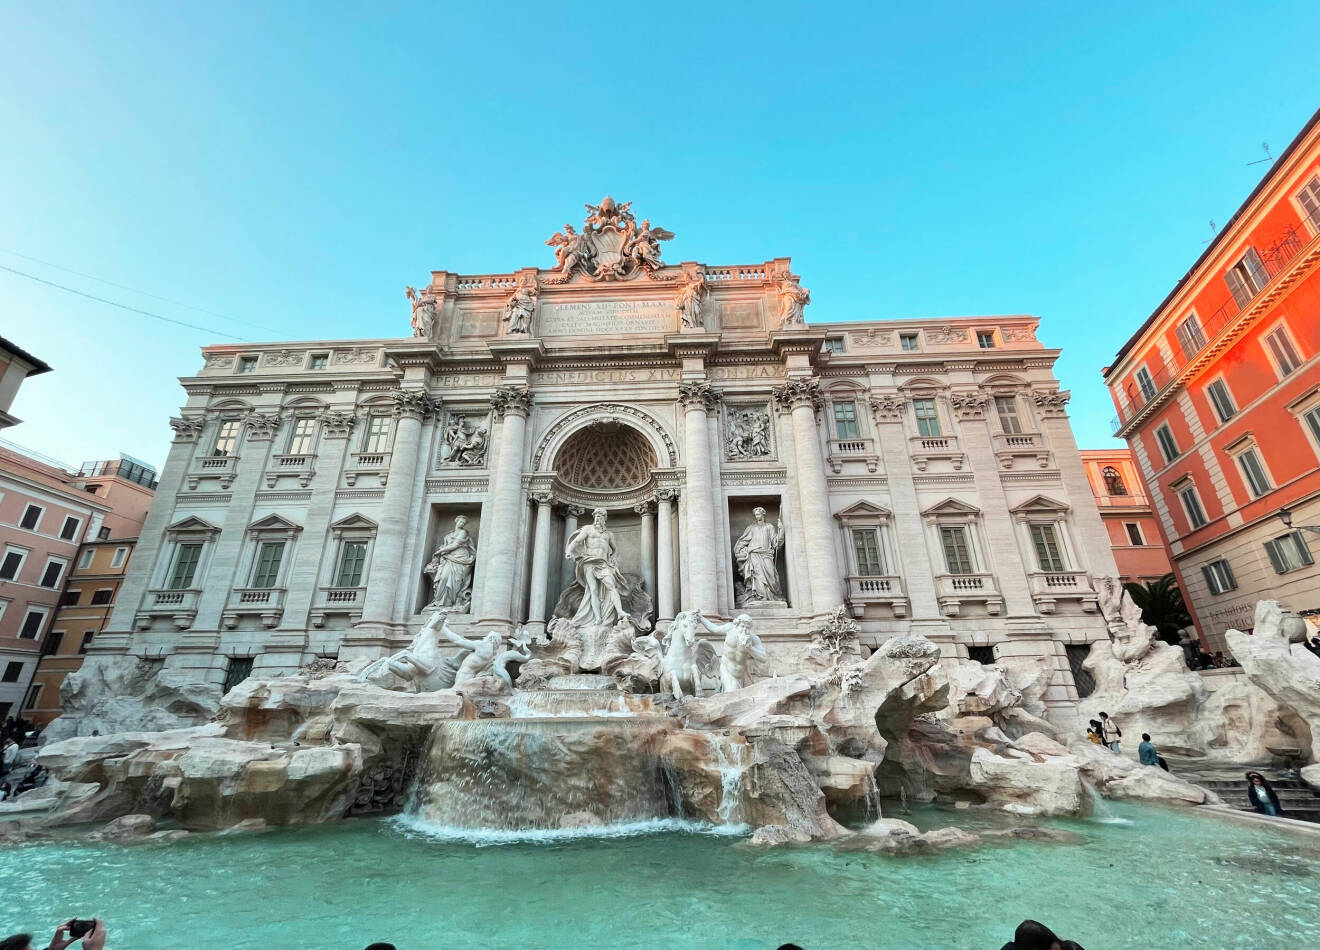 den kända fontänen Fontana di Trevi belägen vid Piazza di Trevi i centrala Rom